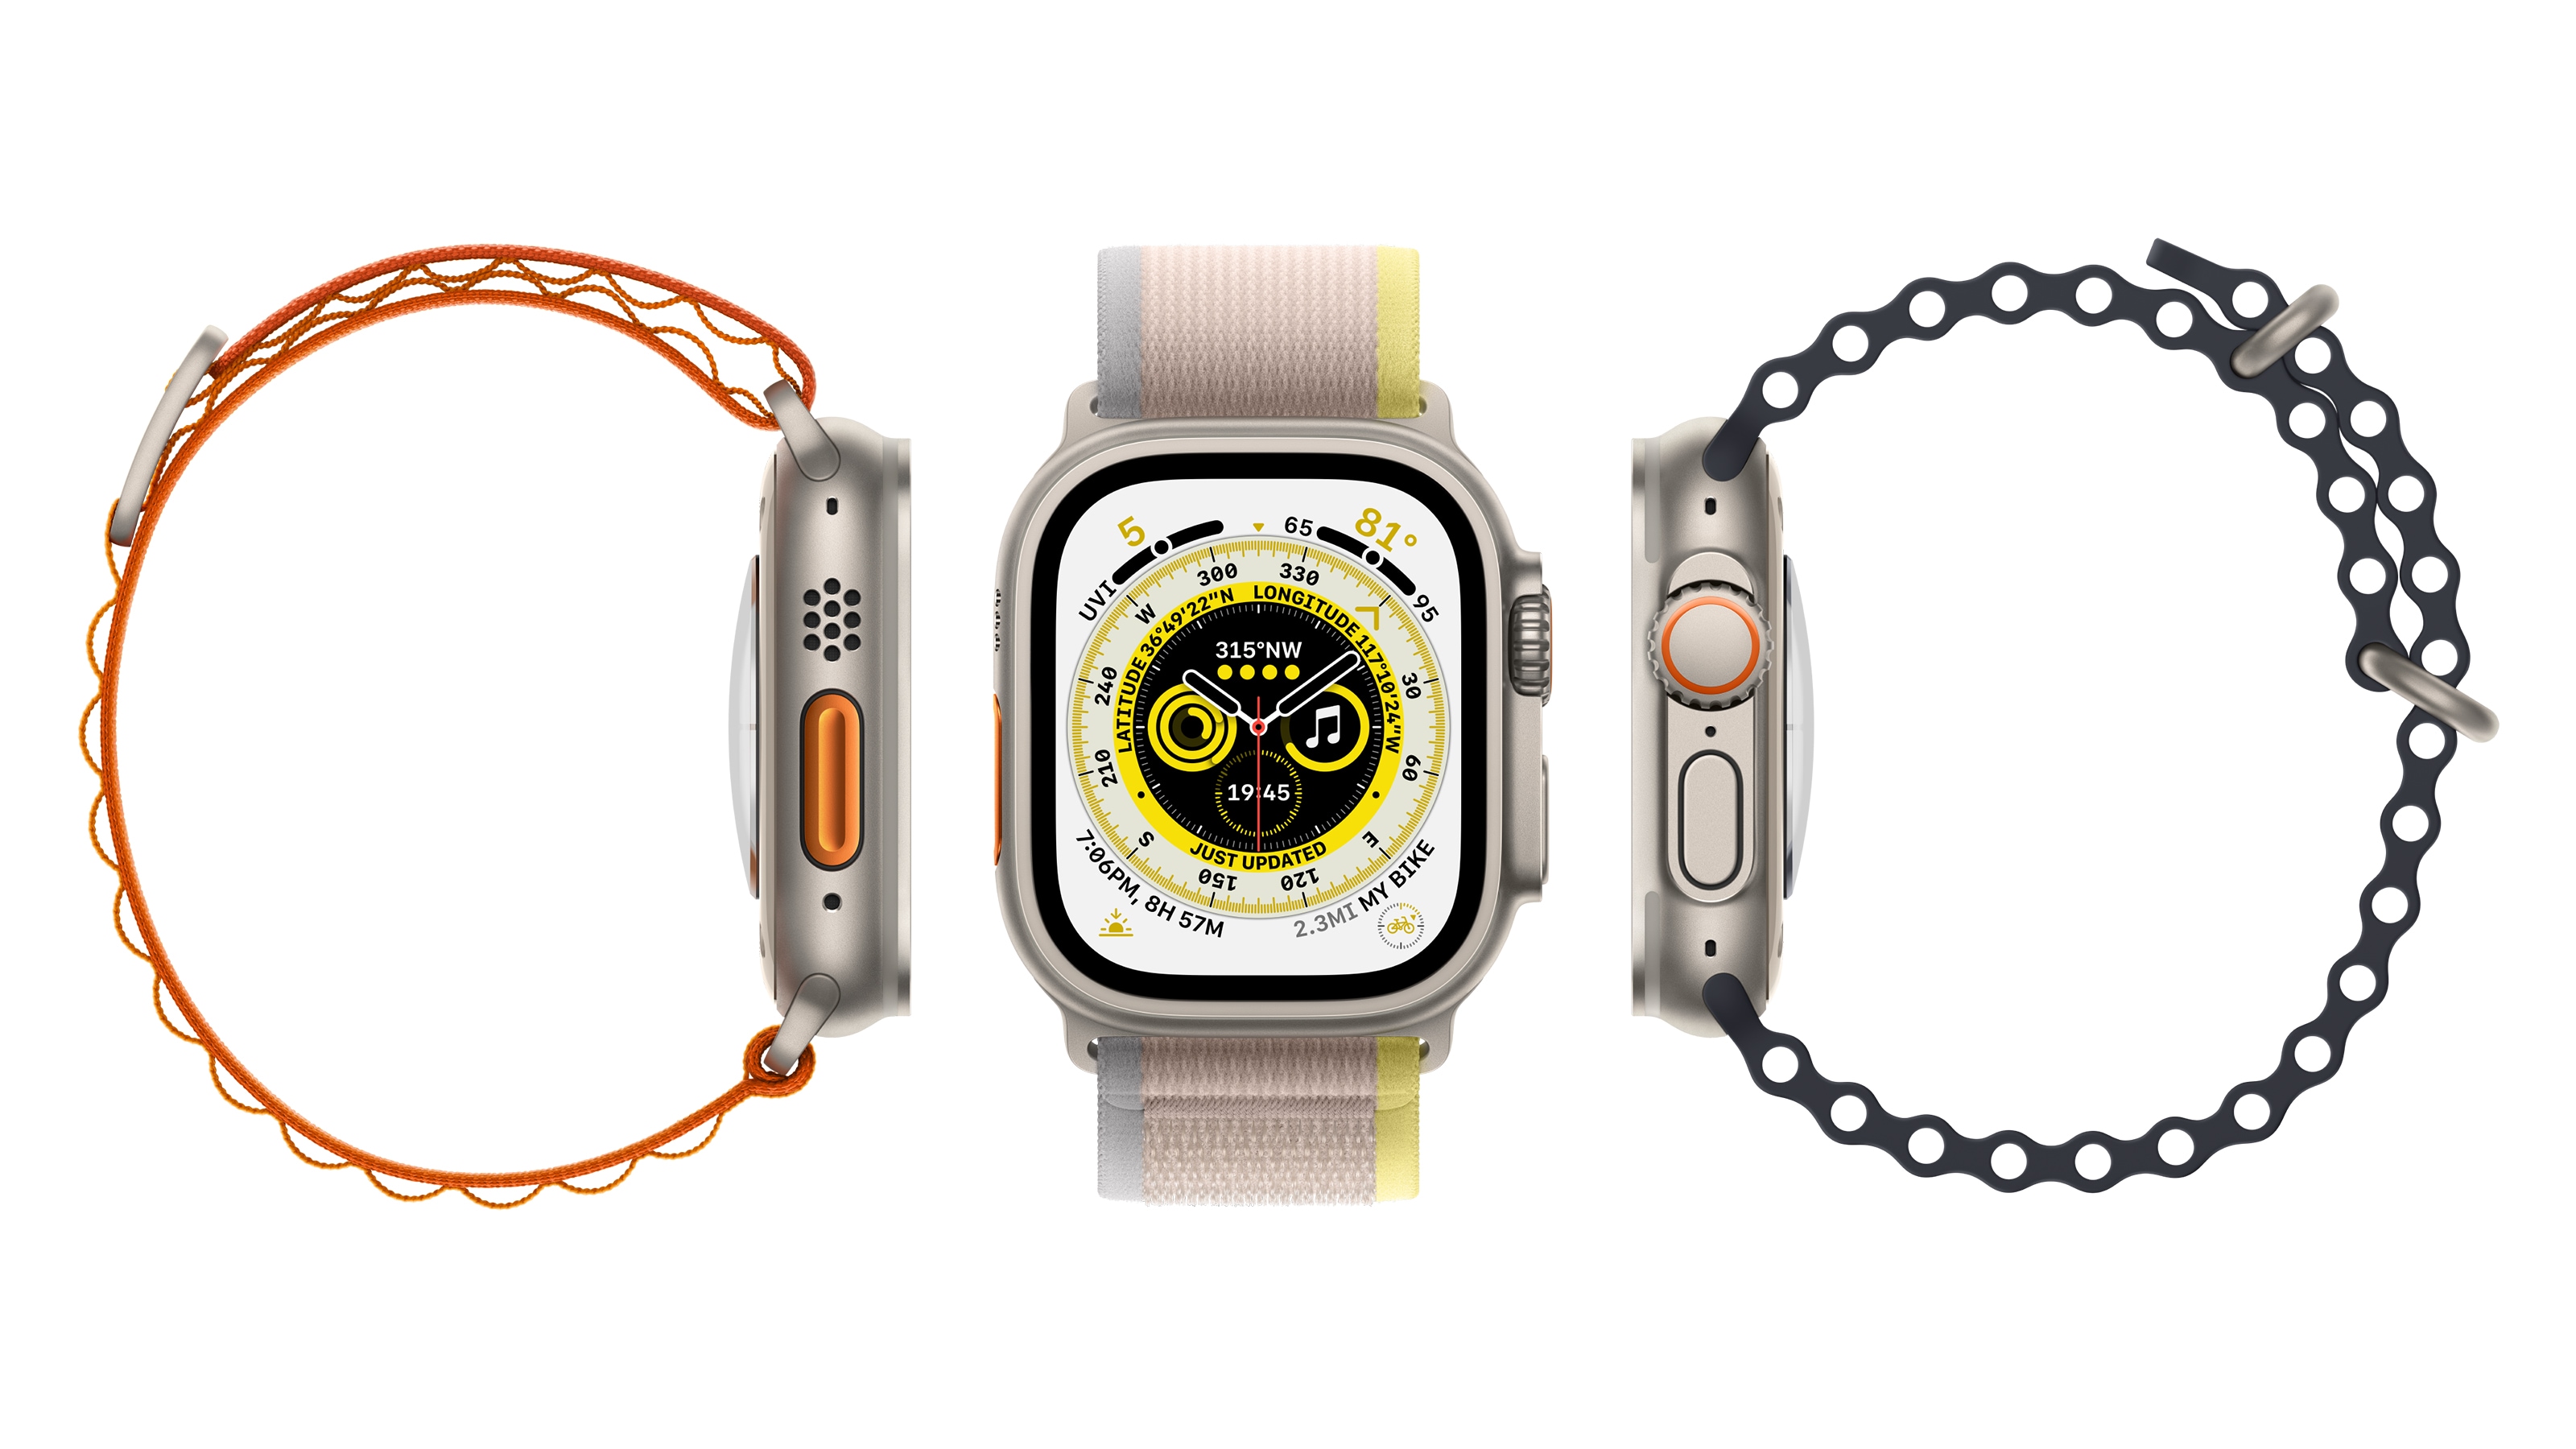 Apple Watch - smartklokker fra Apple | Elkjøp